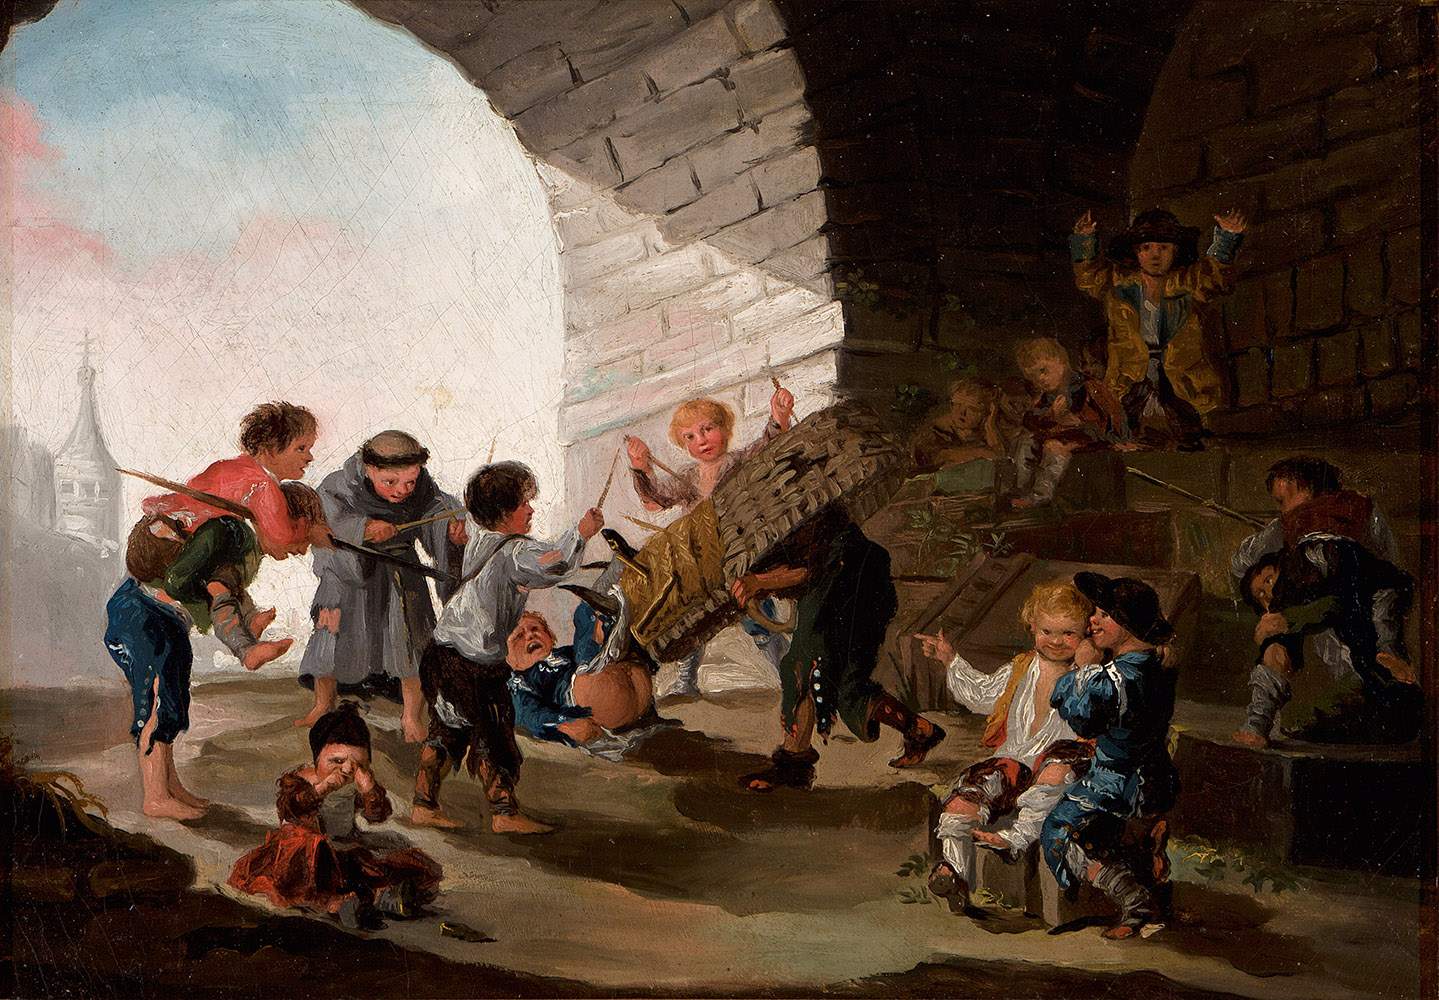 La ribellione della ragione: a Milano la mostra su Francisco Goya